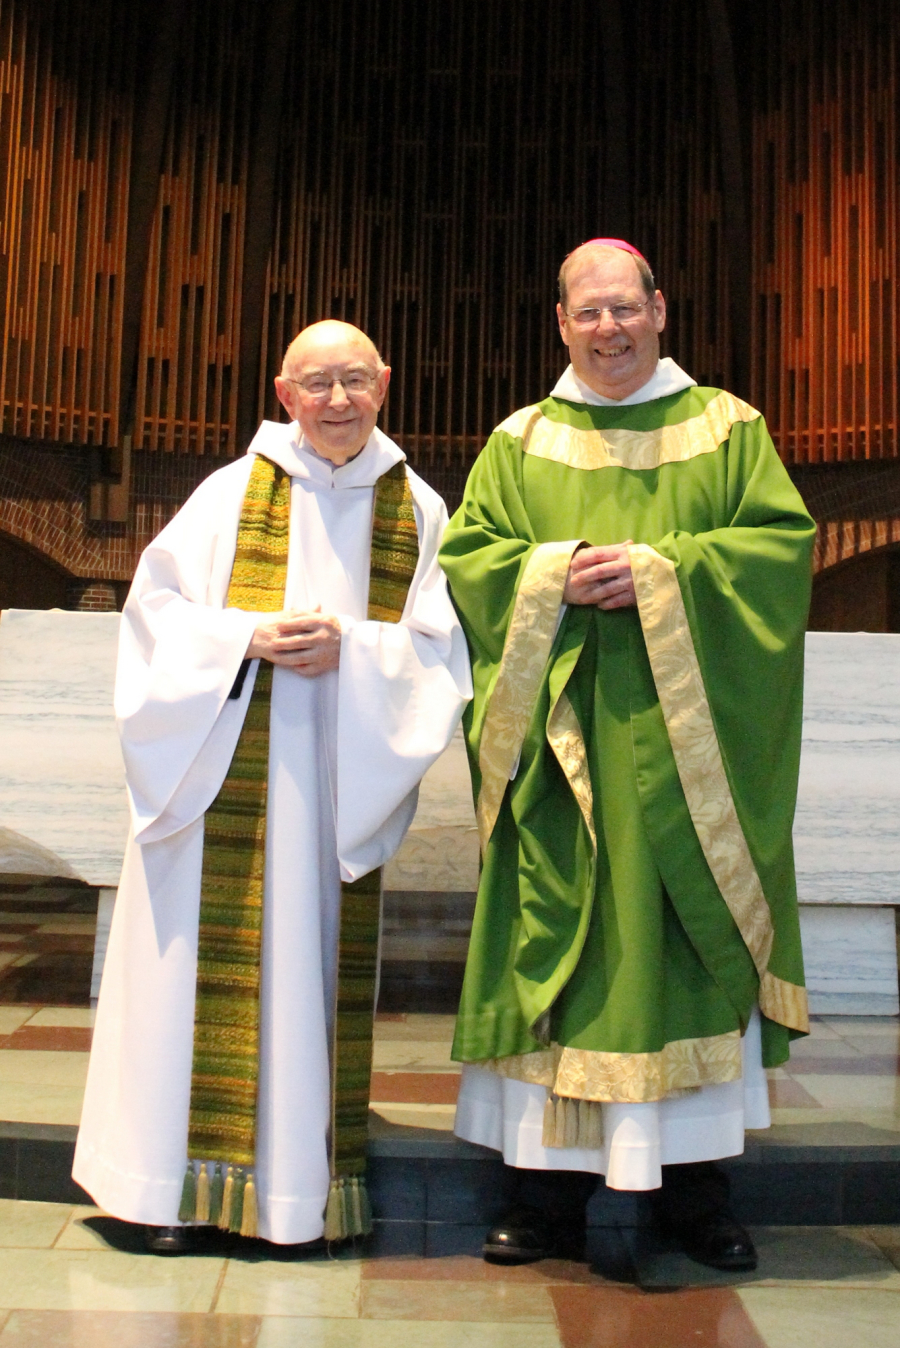 Bishop Joseph and Bishop Robert Deeley